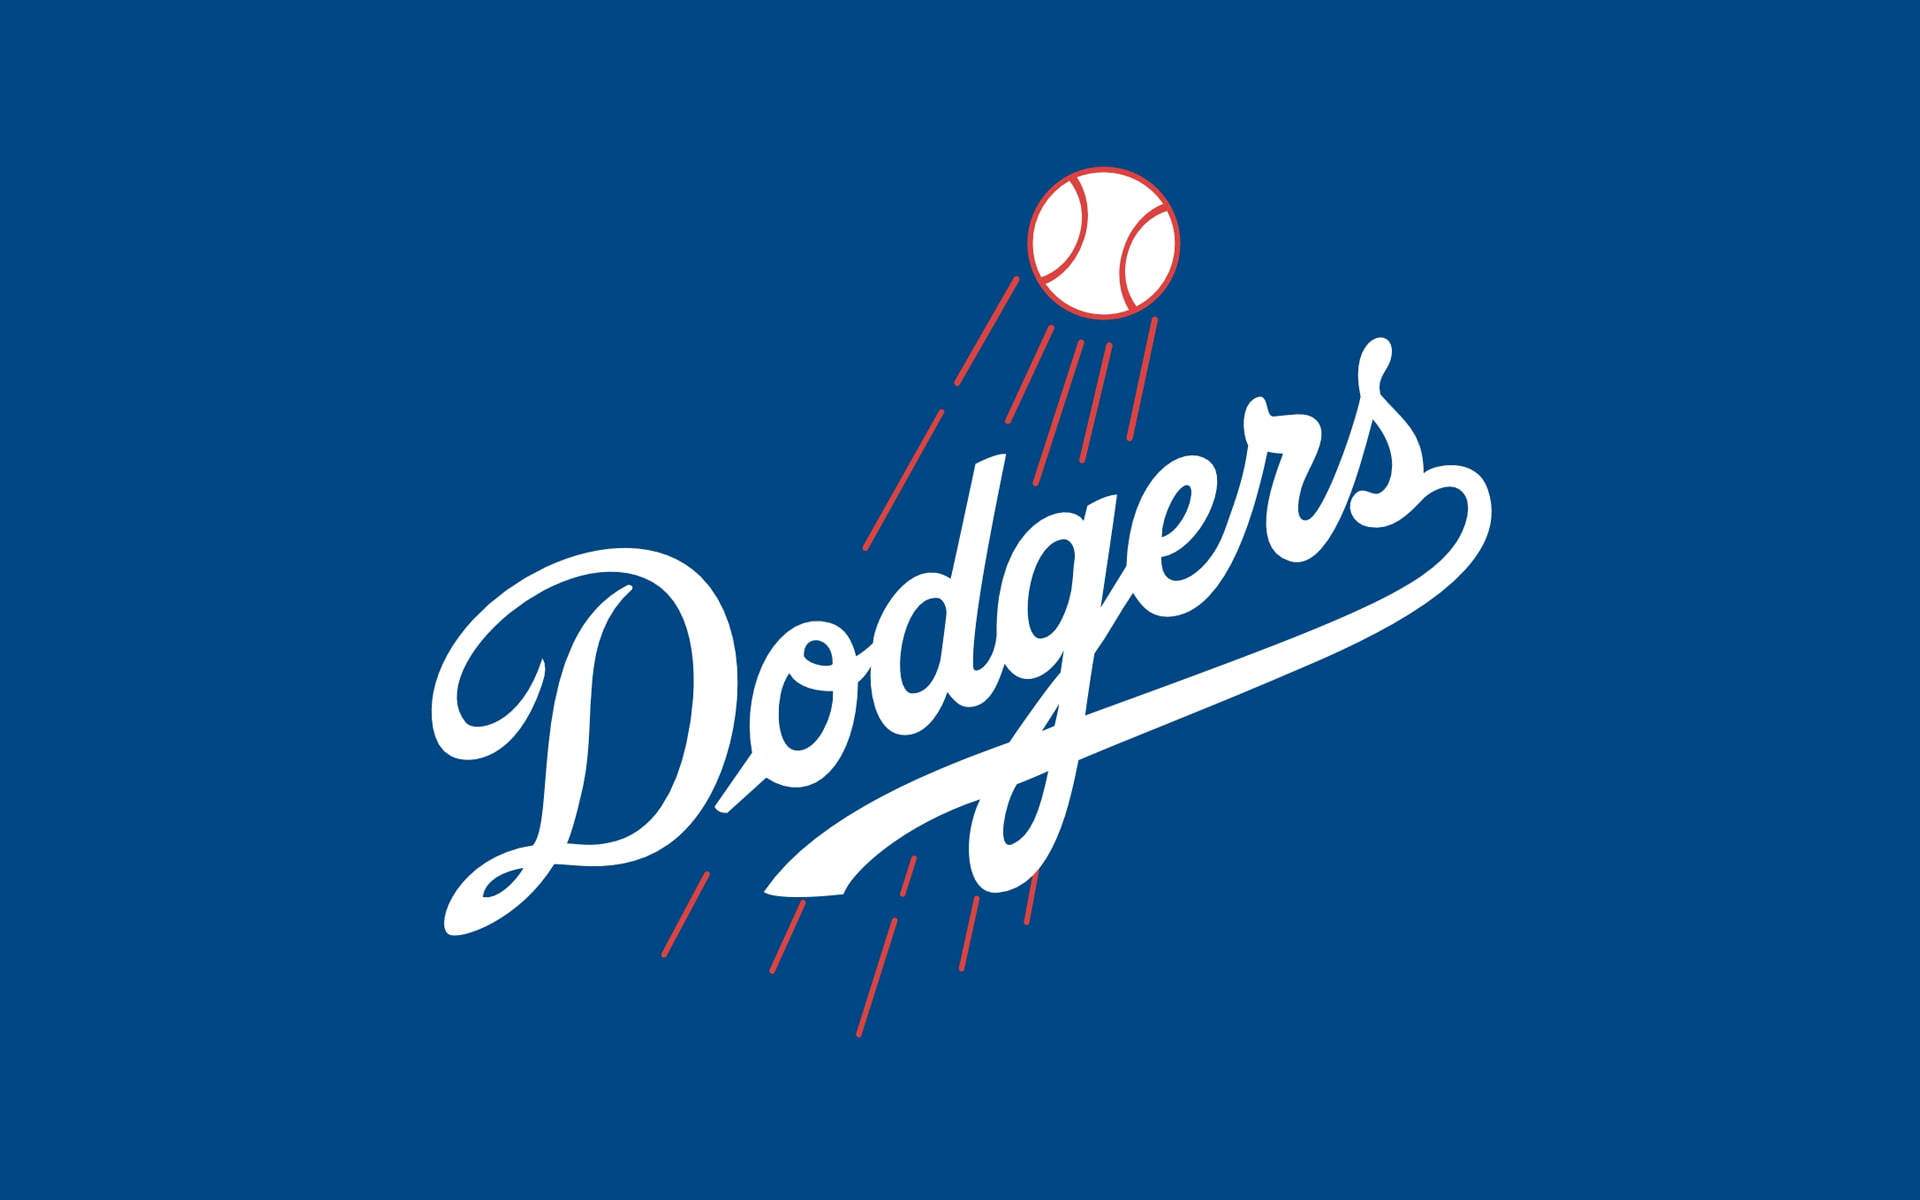 Los Angeles Dodgers Plain Colors